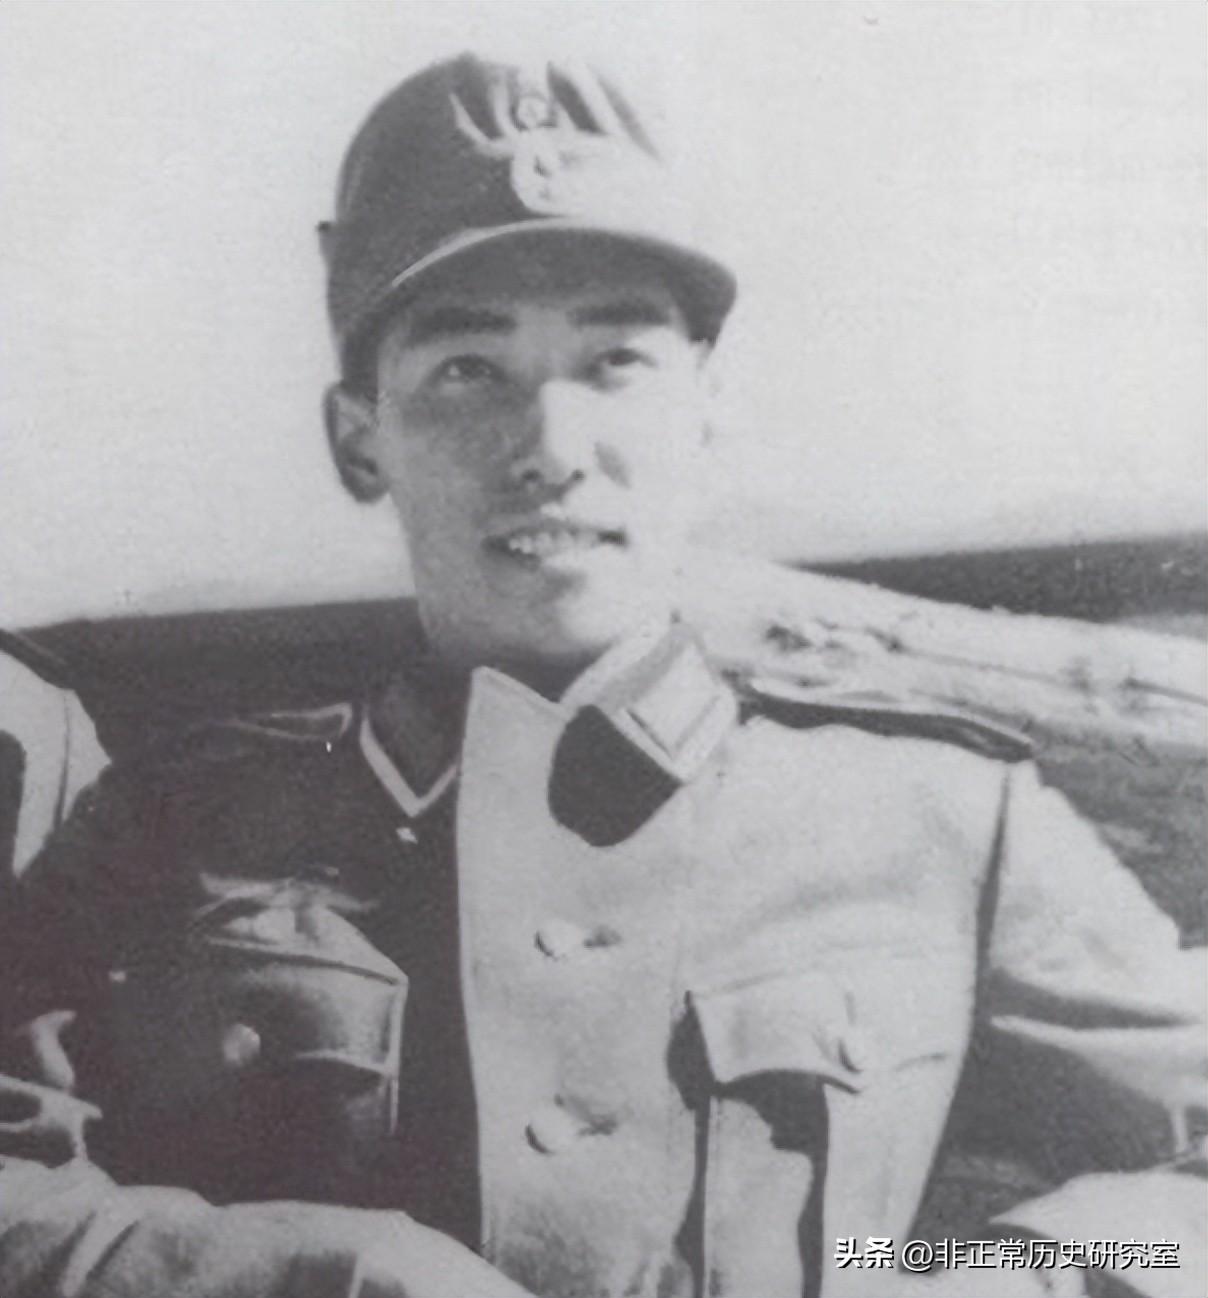 蒋介石有几个儿子分别叫什么,蒋介石的后代现在怎么样了